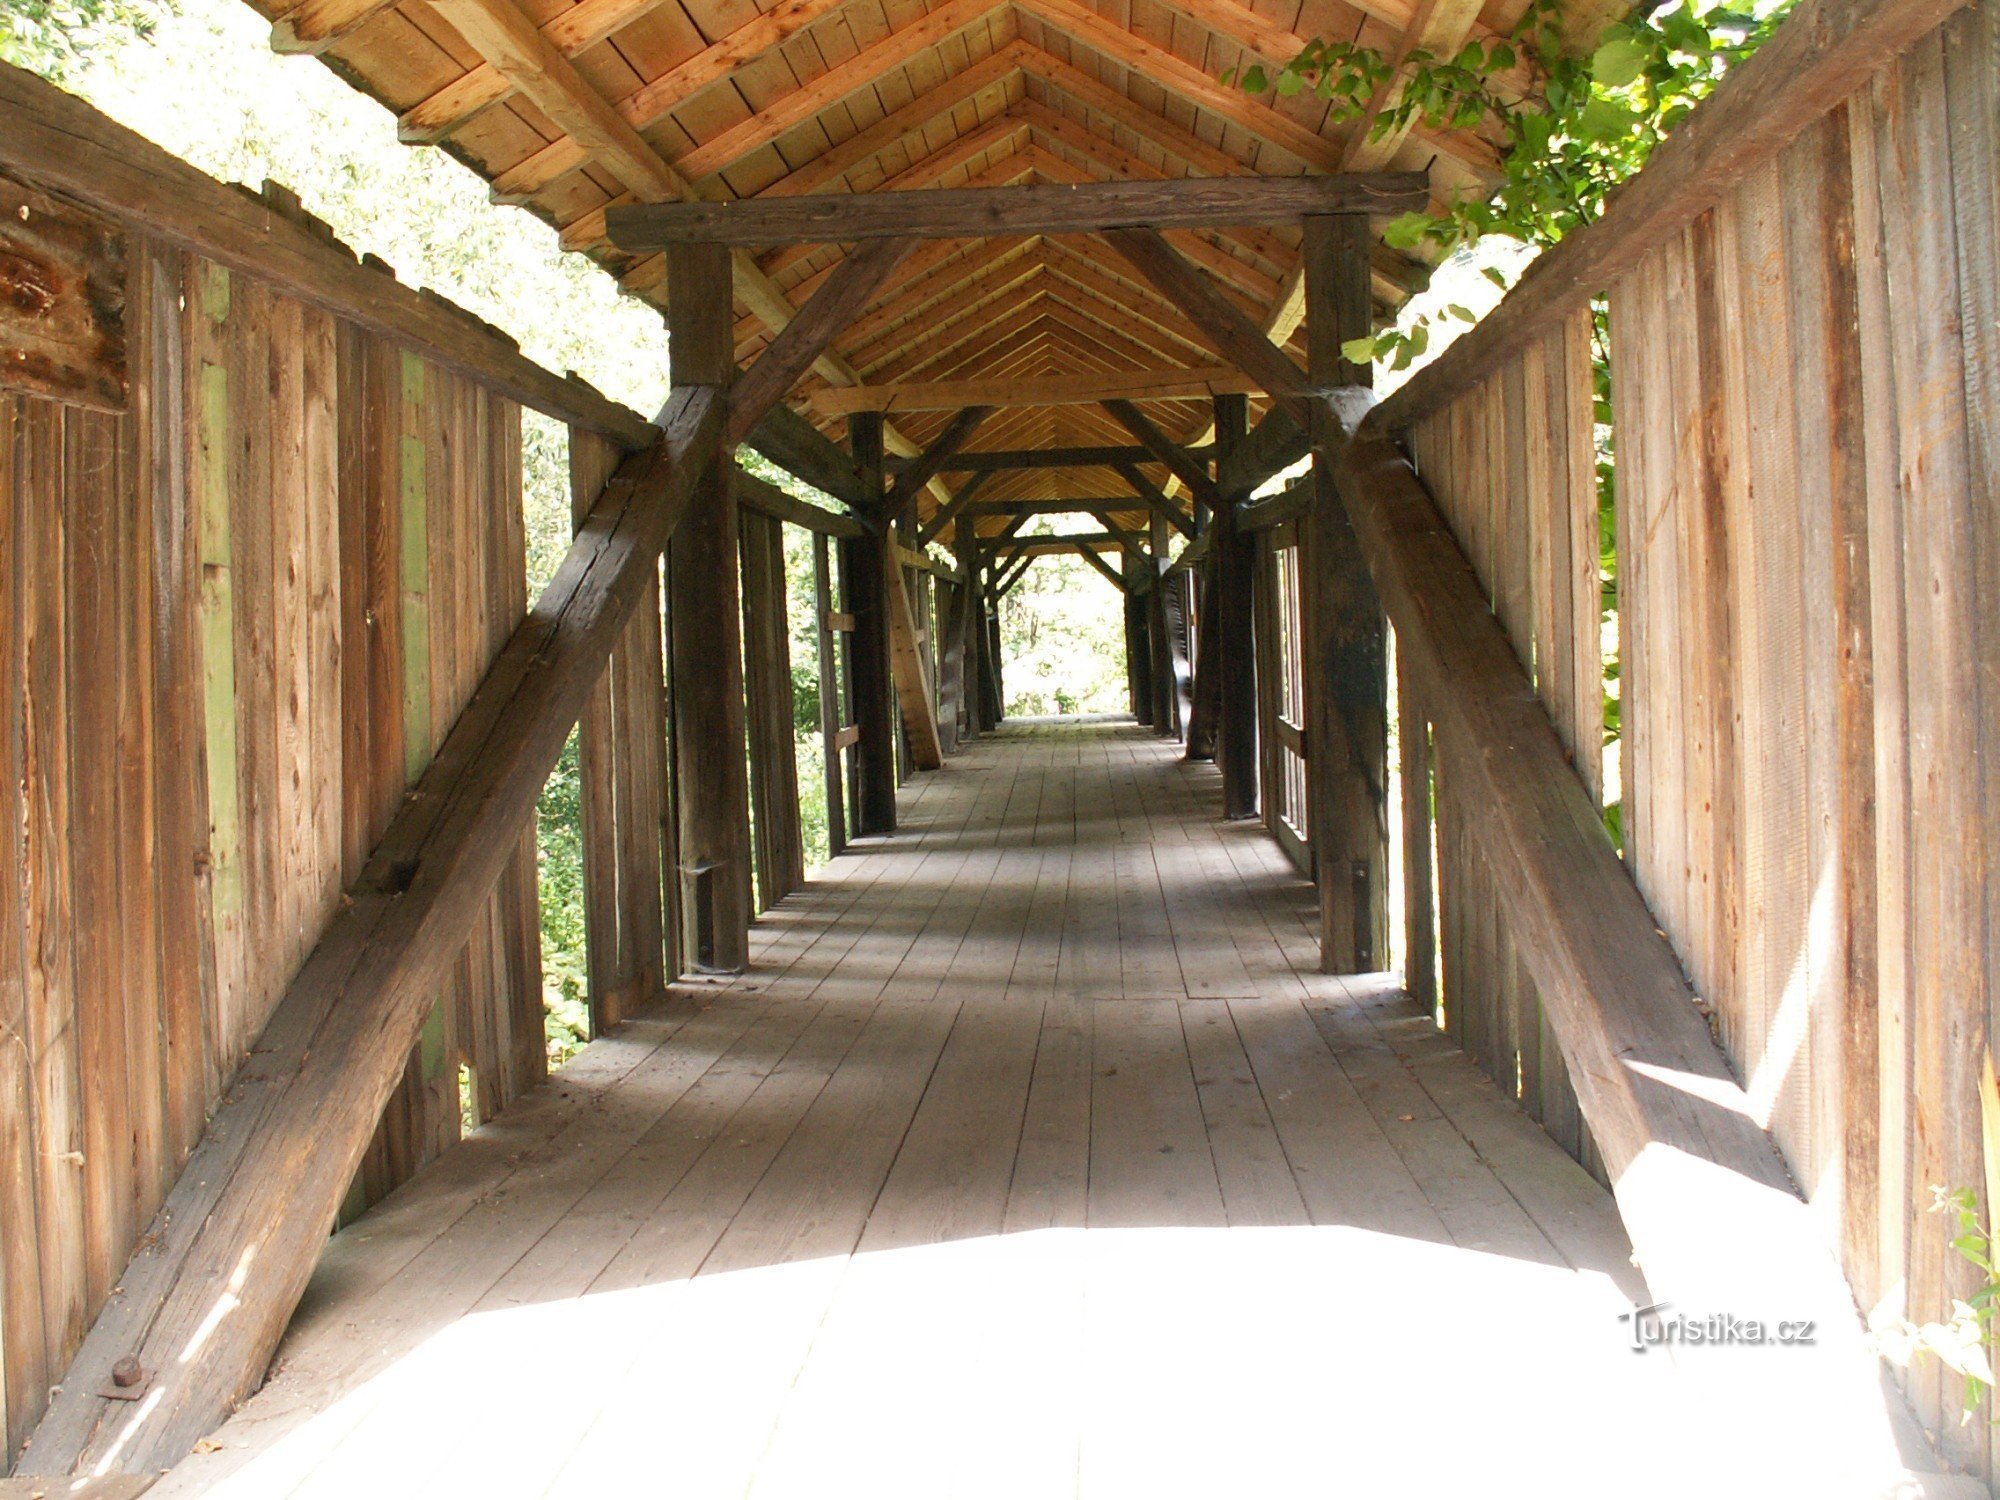 Wooden footbridge - Sudden